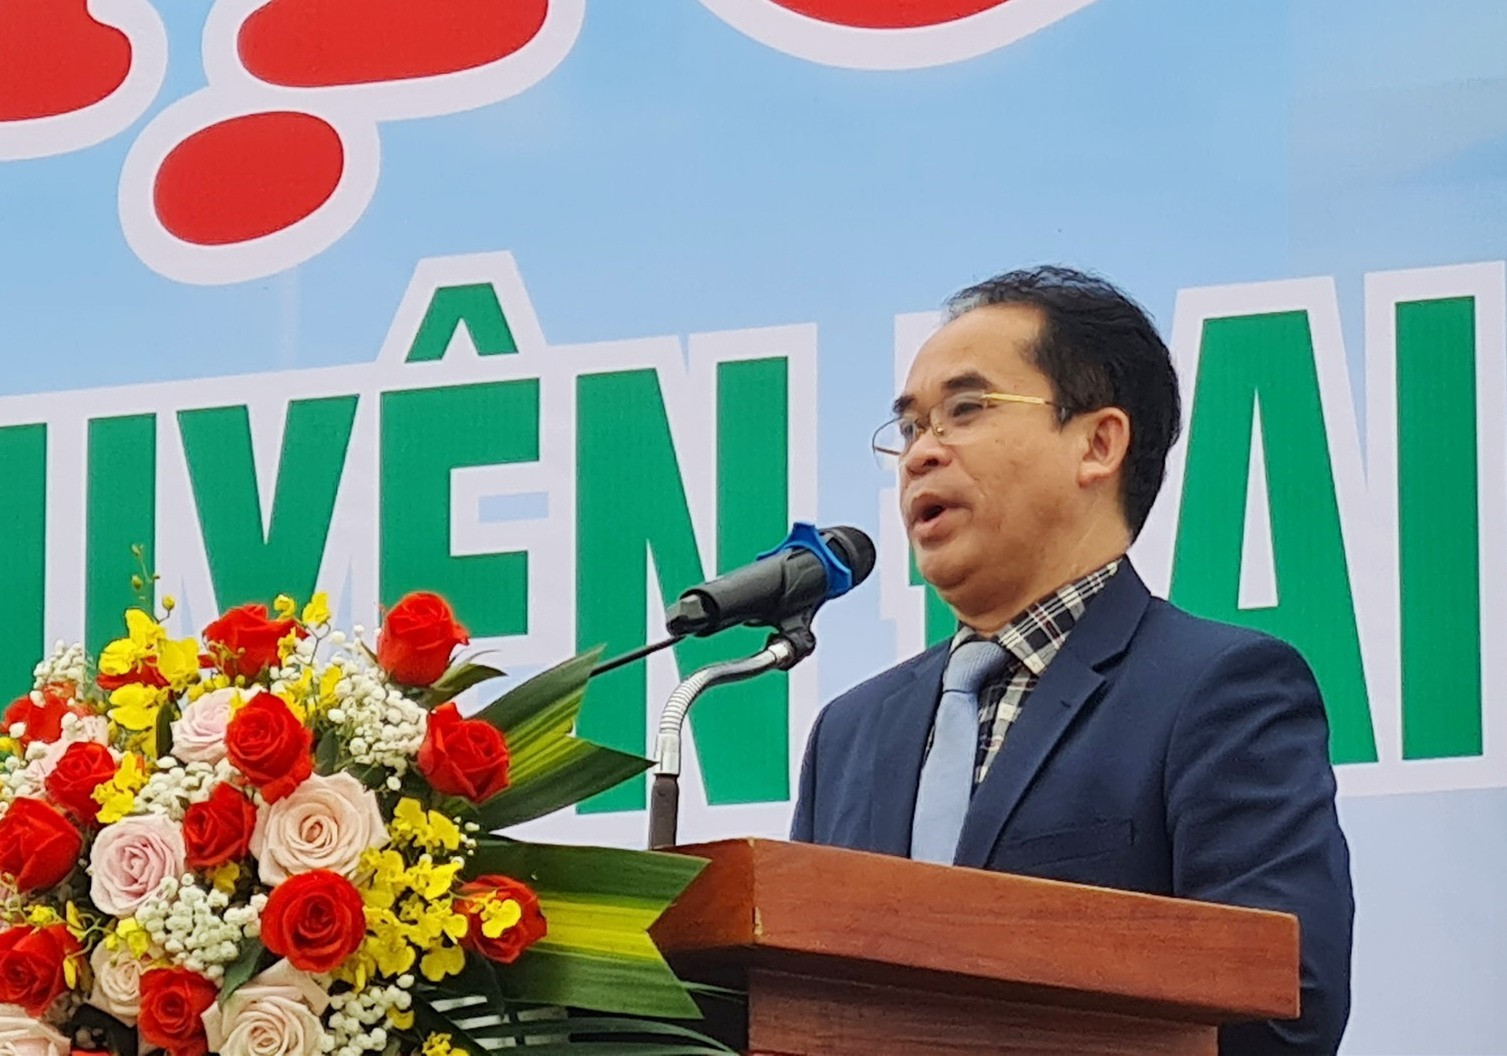 Phó Chủ tịch UBND tỉnh Trần Anh Tuấn phát biểu tại sàn giao dịch việc làm huyện Đại Lộc. Ảnh: D.L